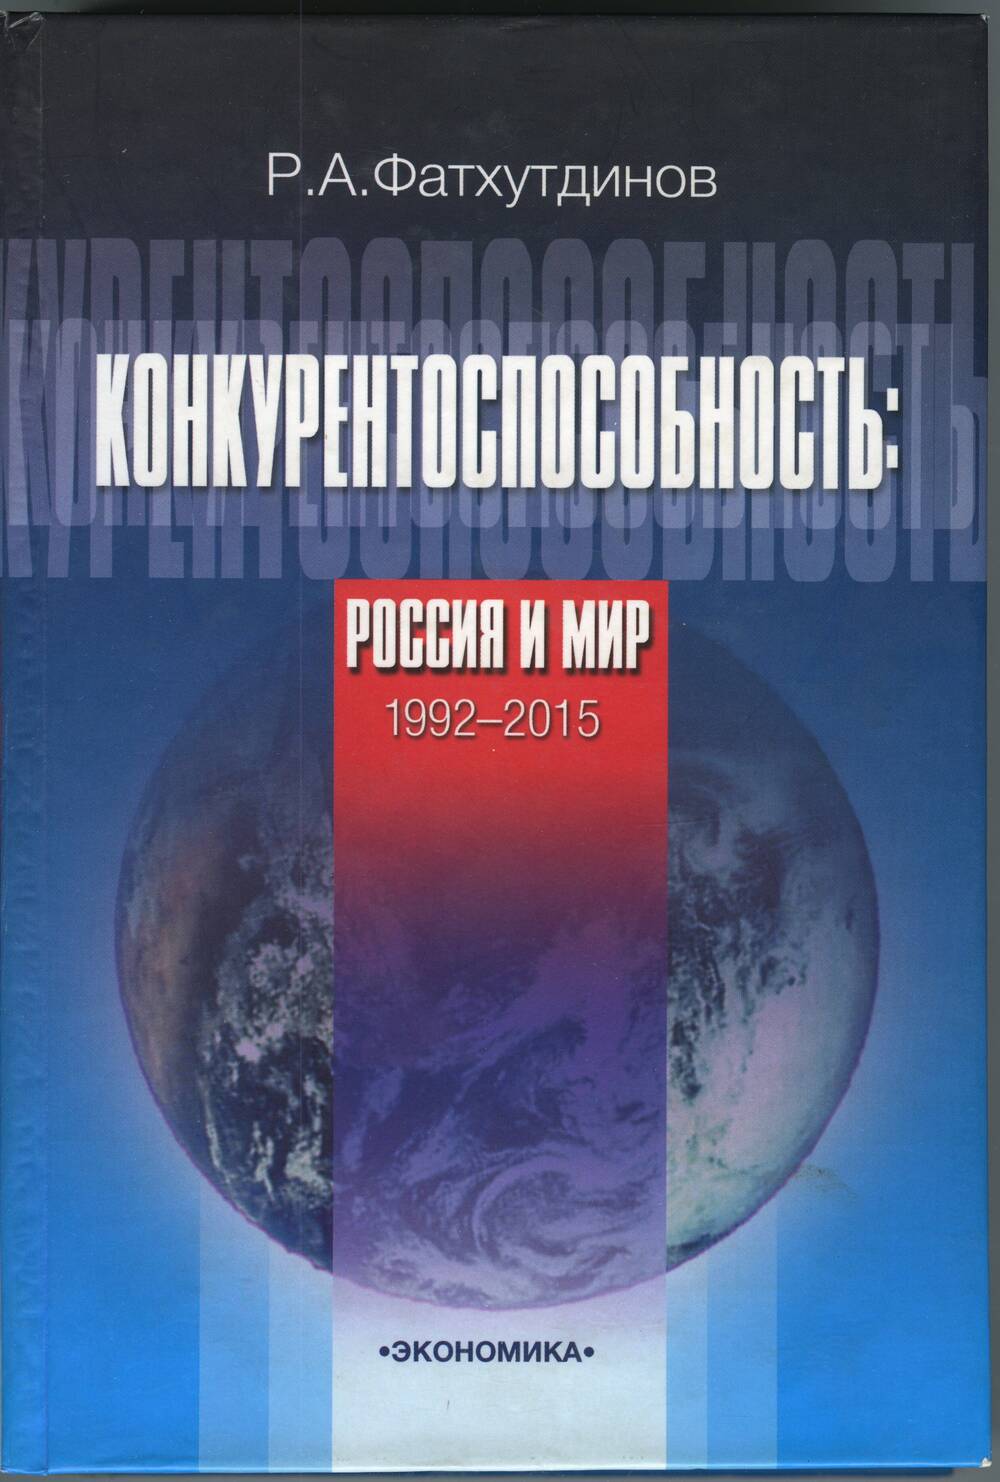 Книга. Фархутдинов Р.А. Конкурентоспособность: Россия и мир. 1992-2015, 2005 г.